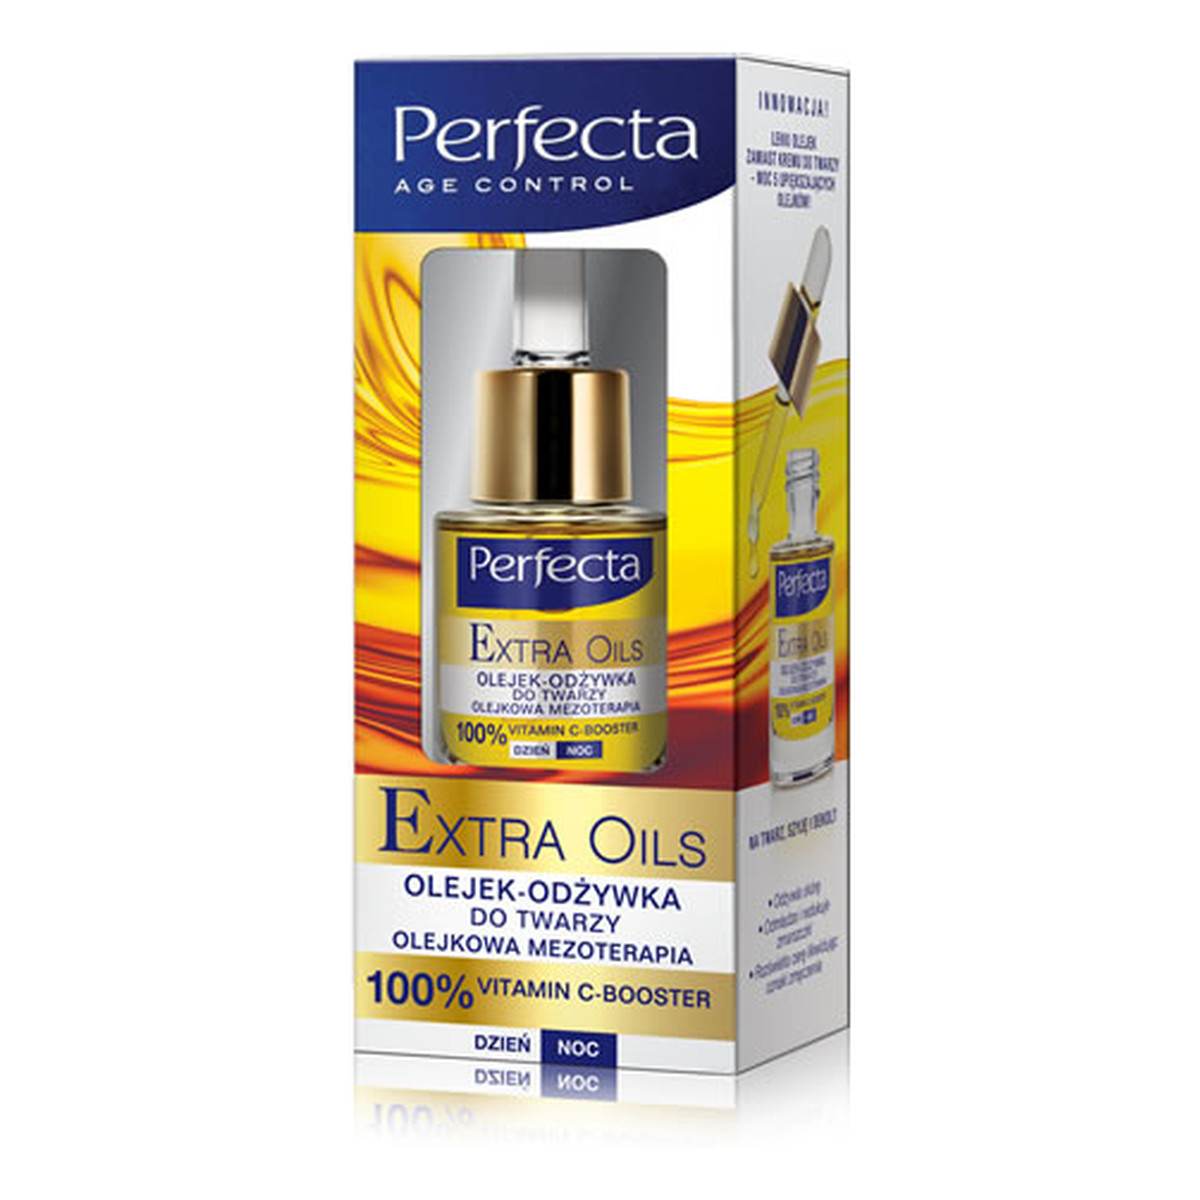 Perfecta Age Control Extra Oils Olejek-Odżywka Do Twarzy - Olejkowa Mezoterapia Na Dzień i Na Noc 15ml